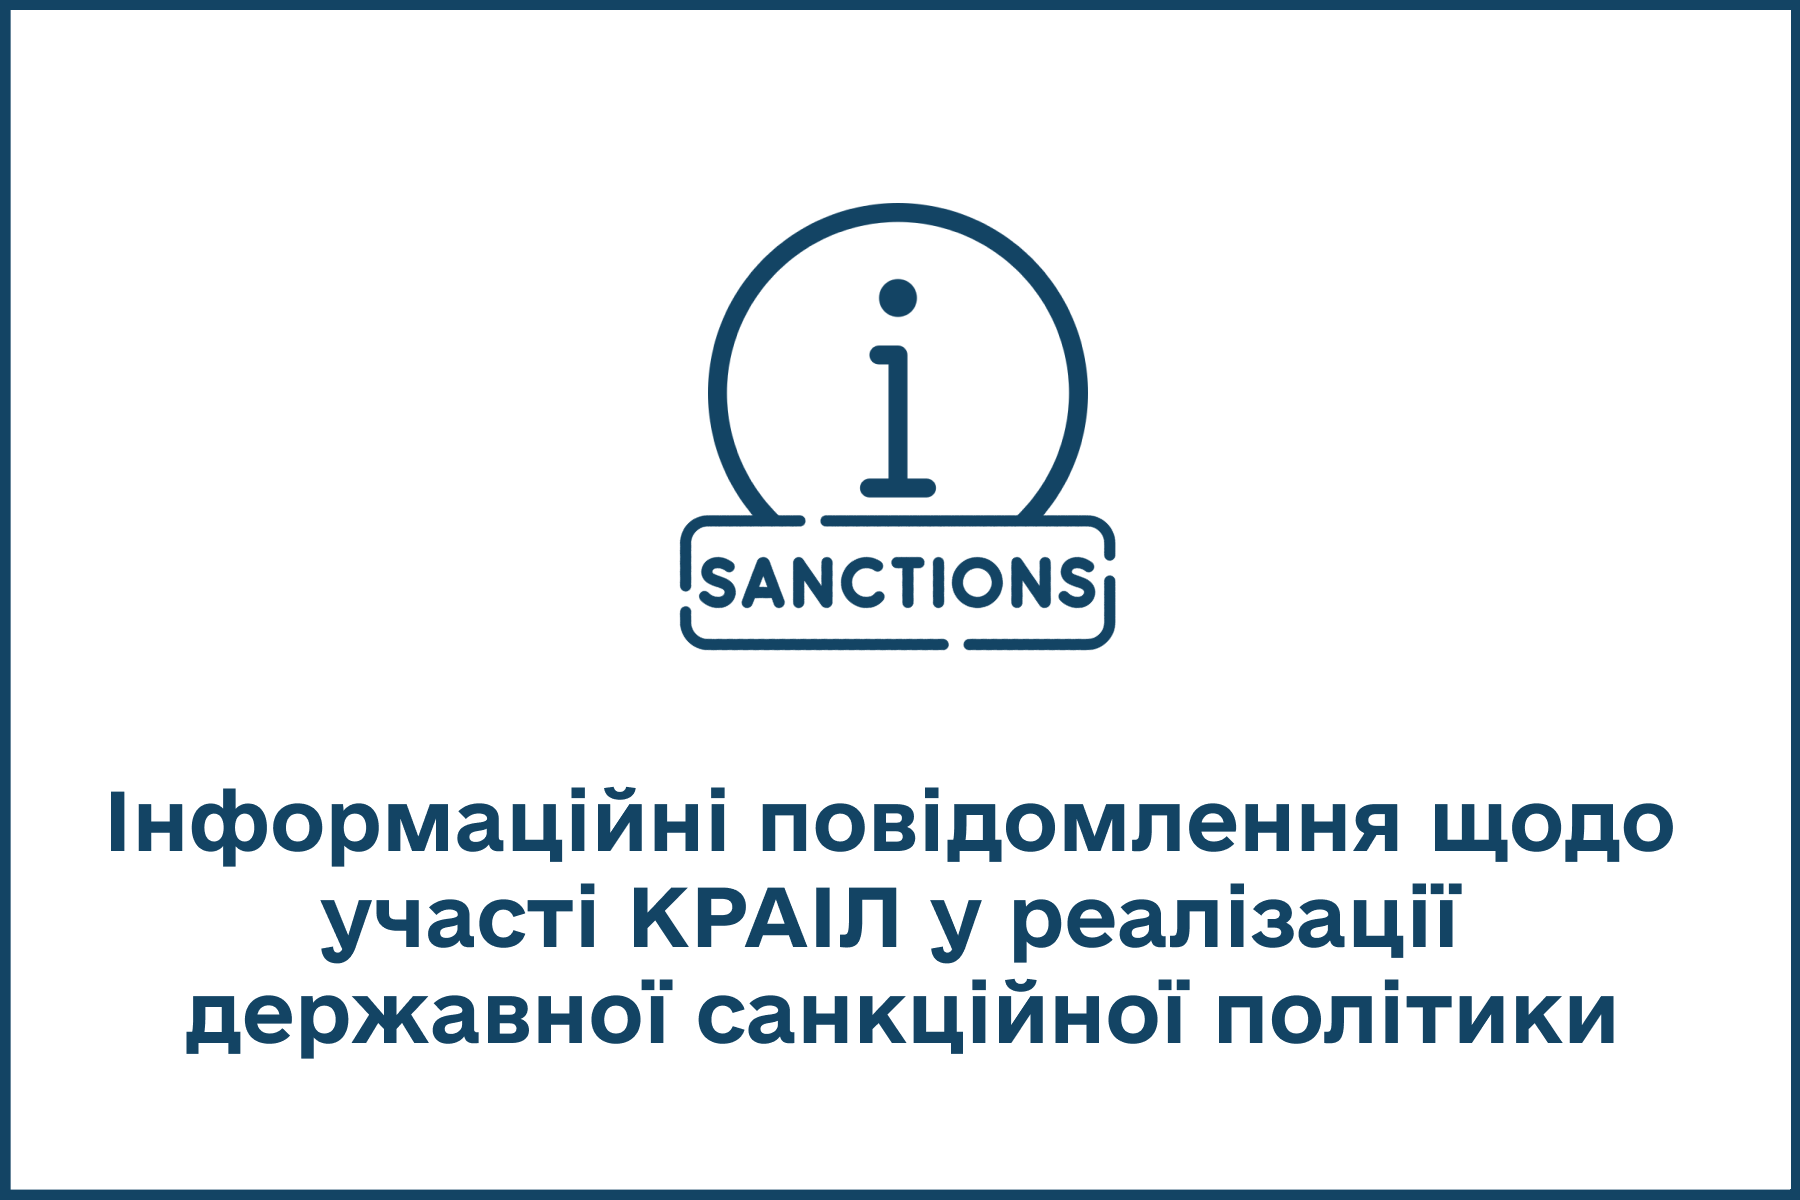 sanctions.png